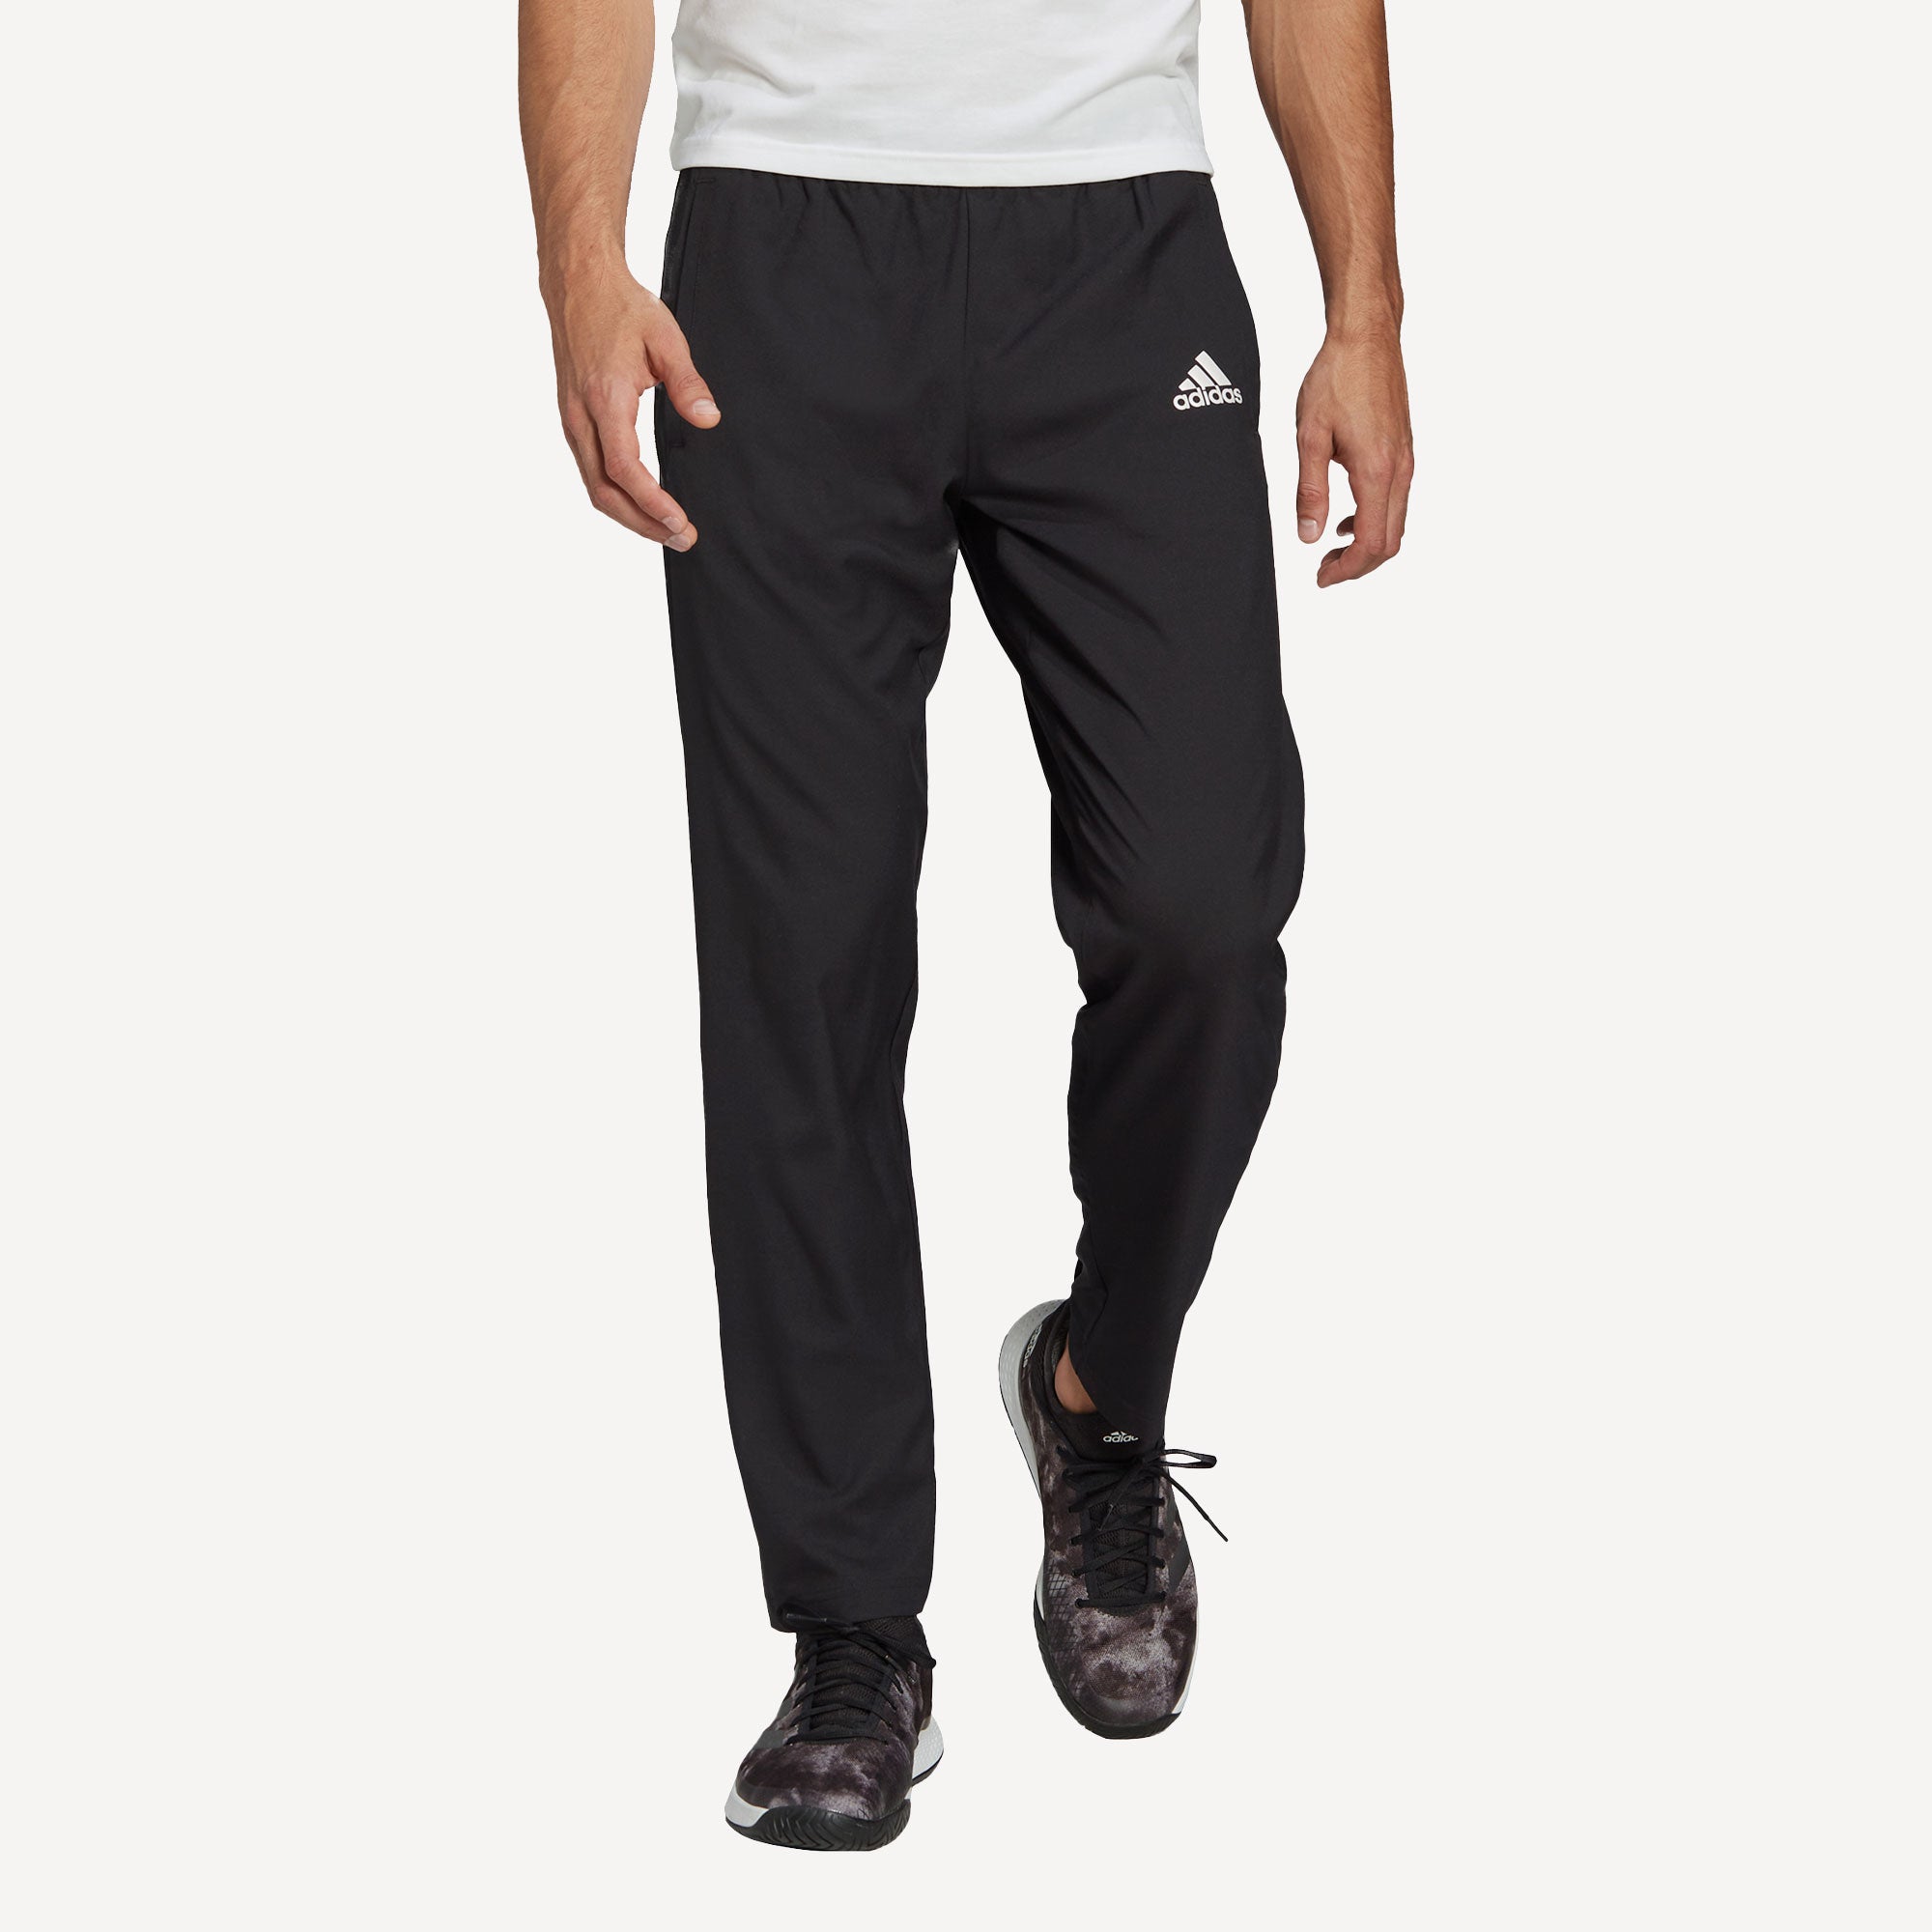 adidas Melbourne Men's Stretch Woven Tennis Pants Black (1)